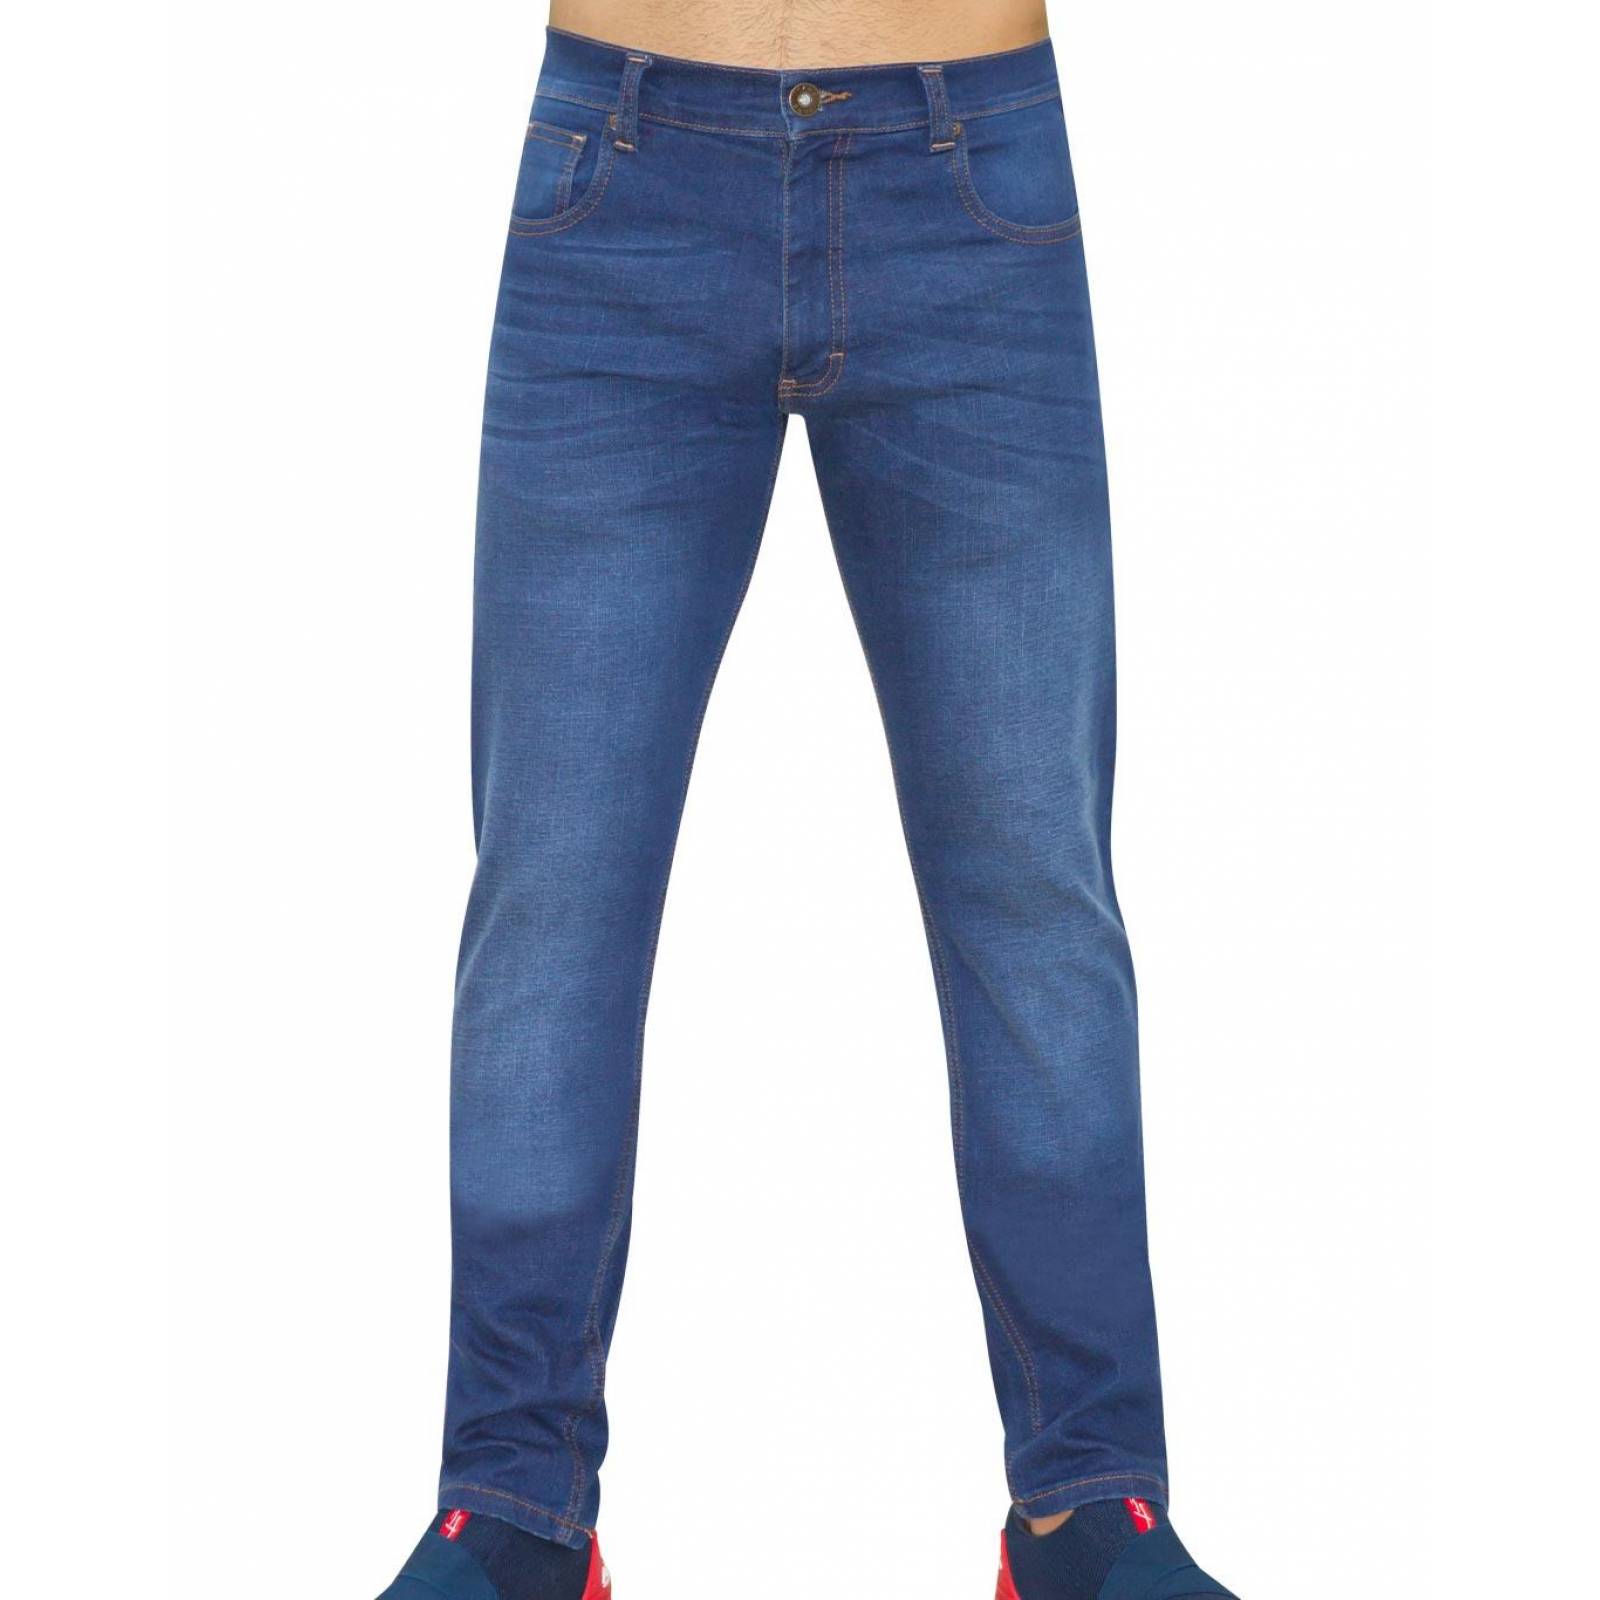 Jeans Básico Hombre Salvaje Tentación Stone 63103406 Mezclilla Stretch 